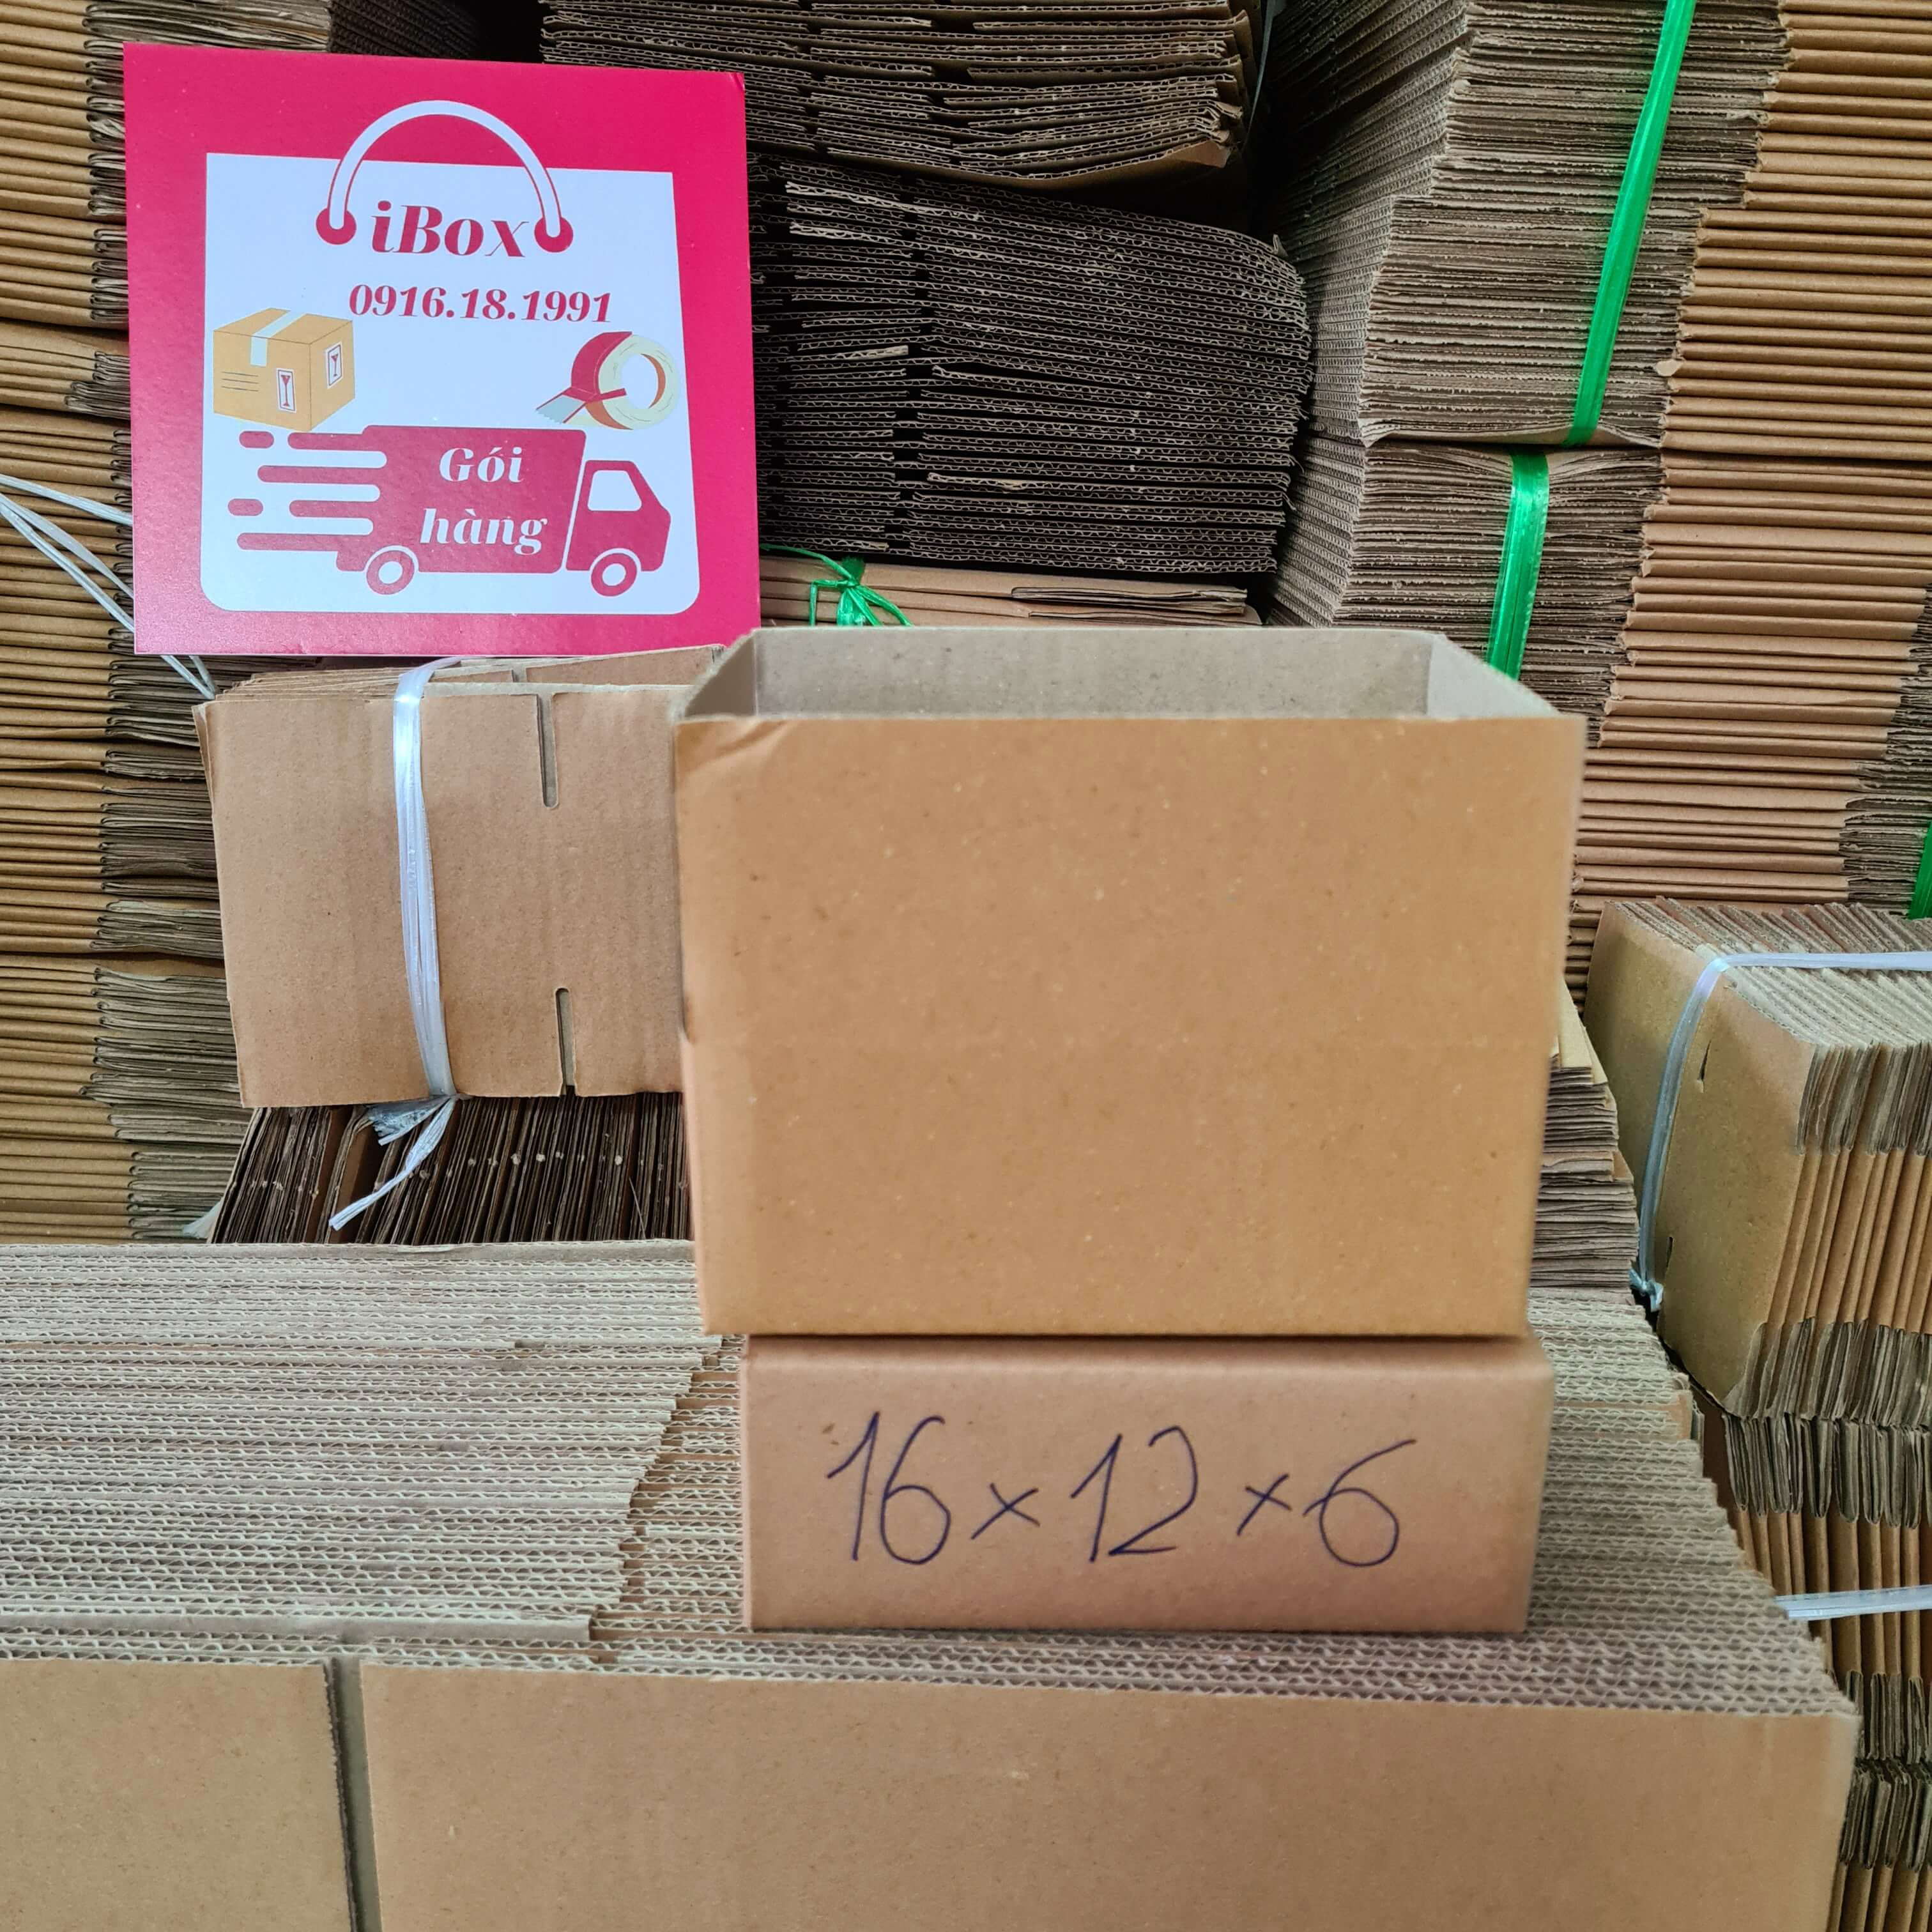 16x12x6 Combo 20 hộp Carton iBox gói hàng